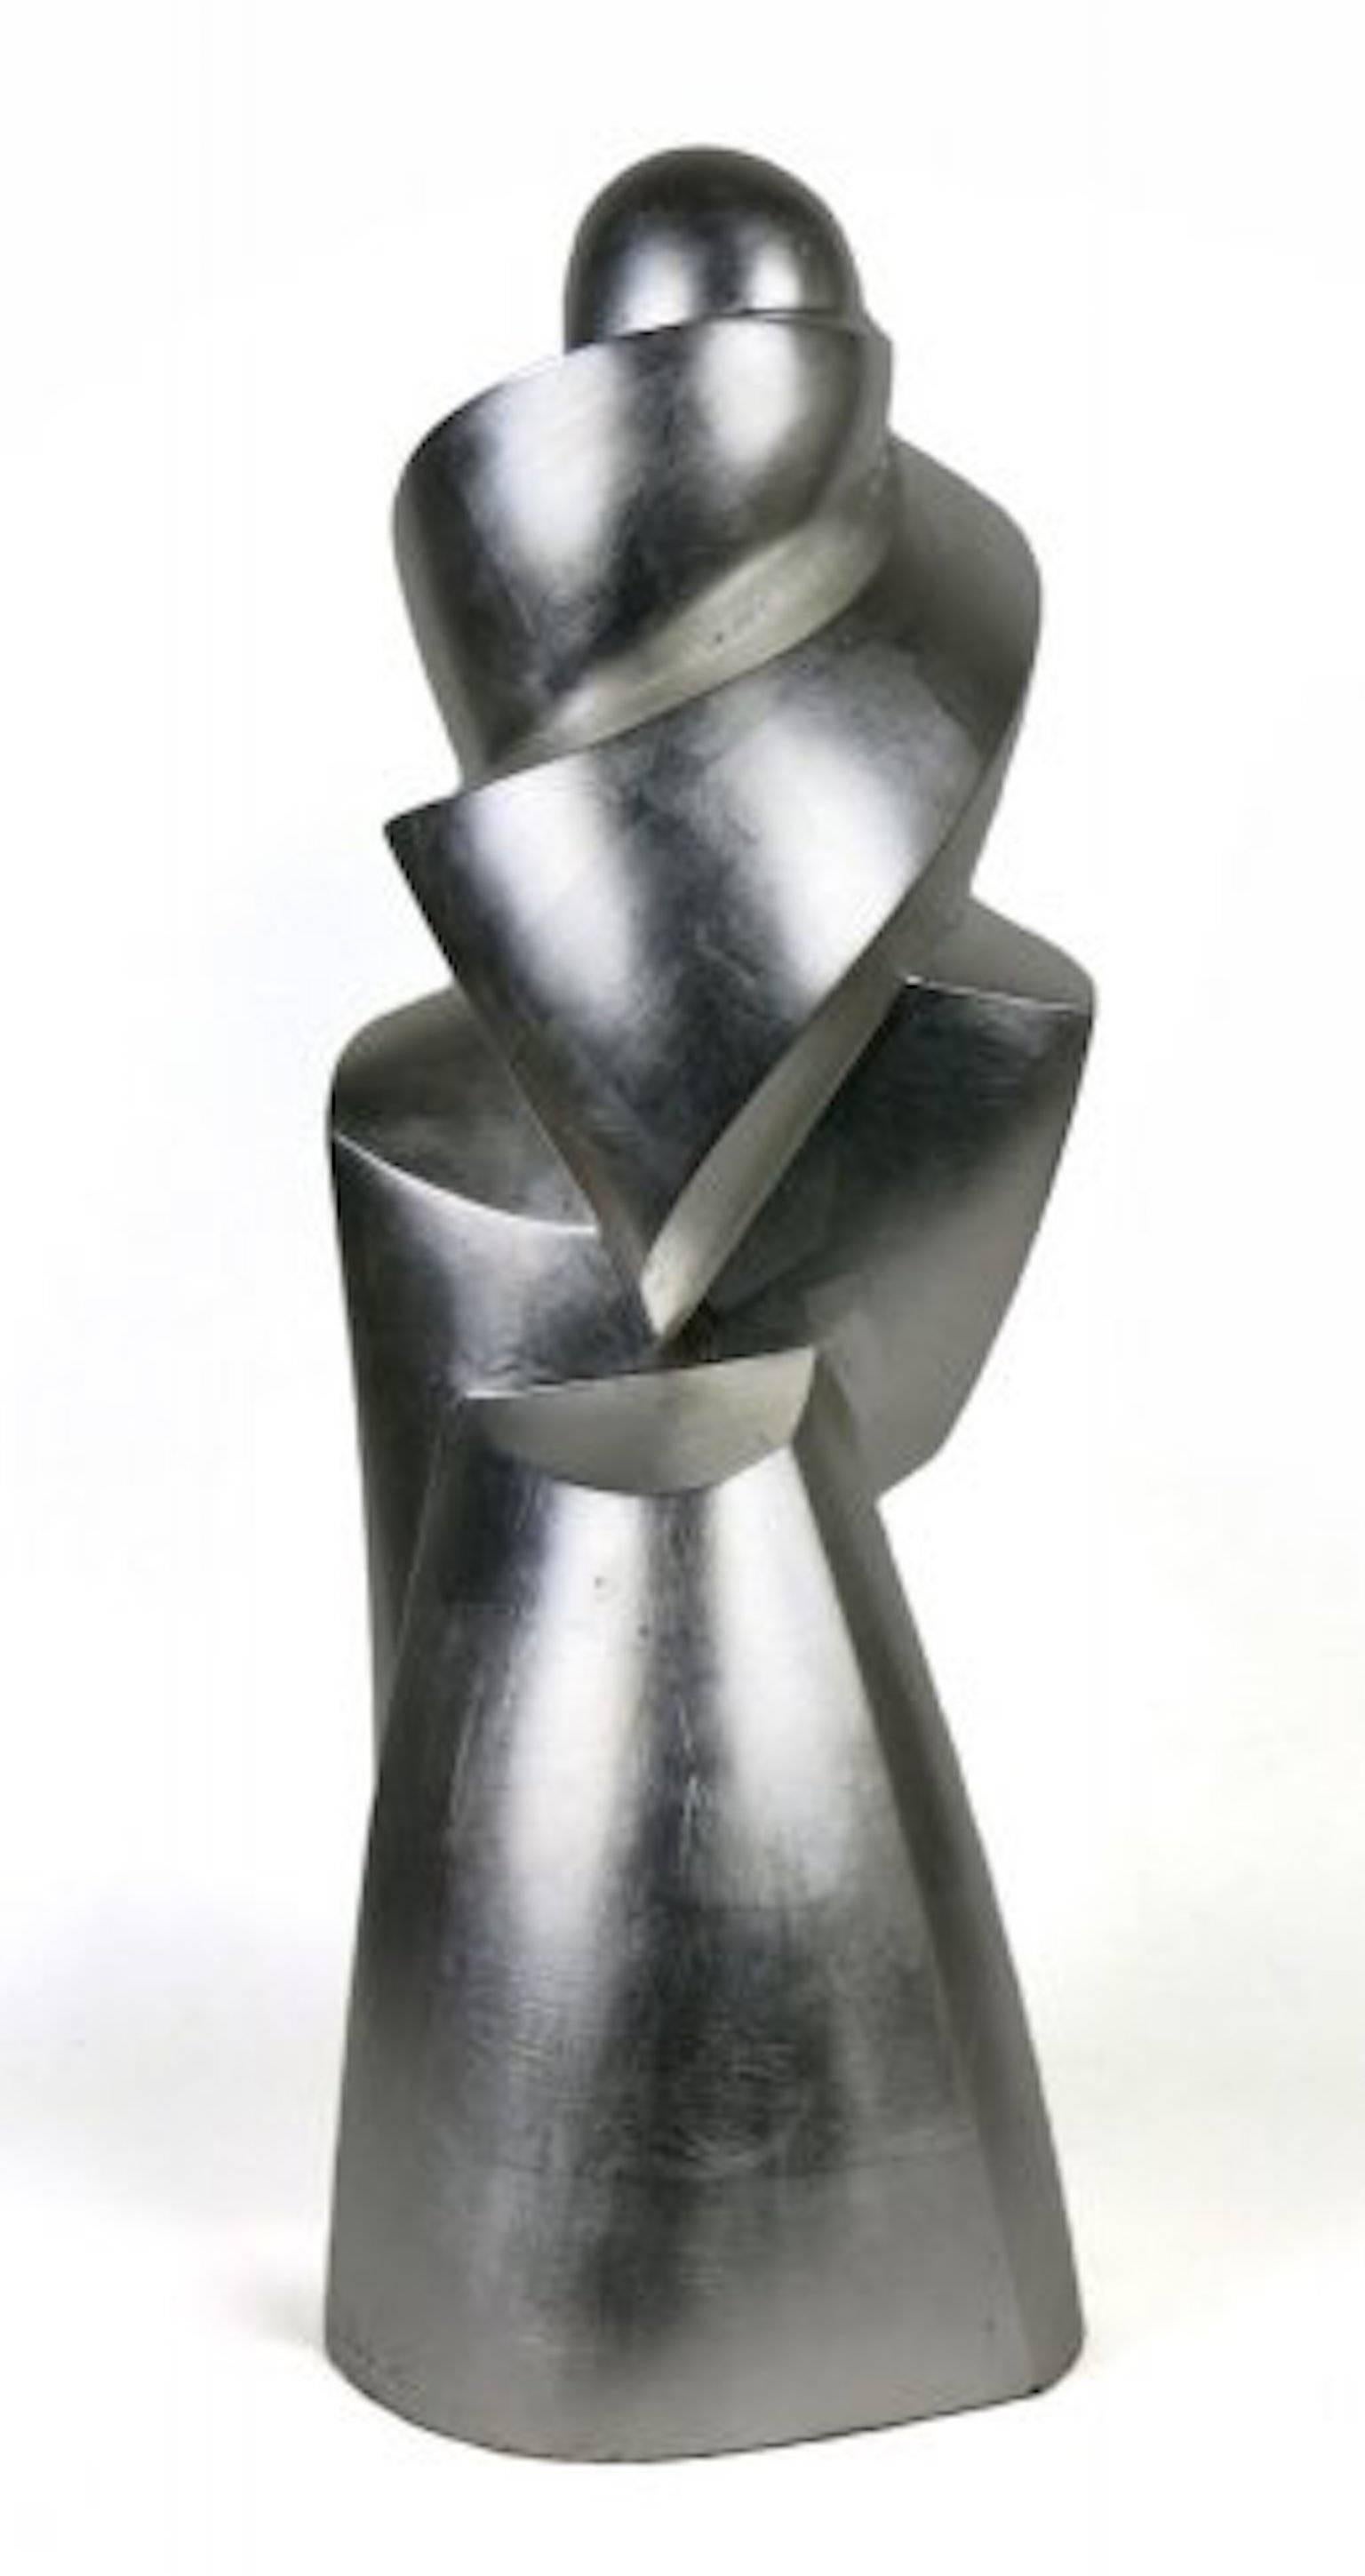 Condor in Silver - Sculpture by Joel Urruty